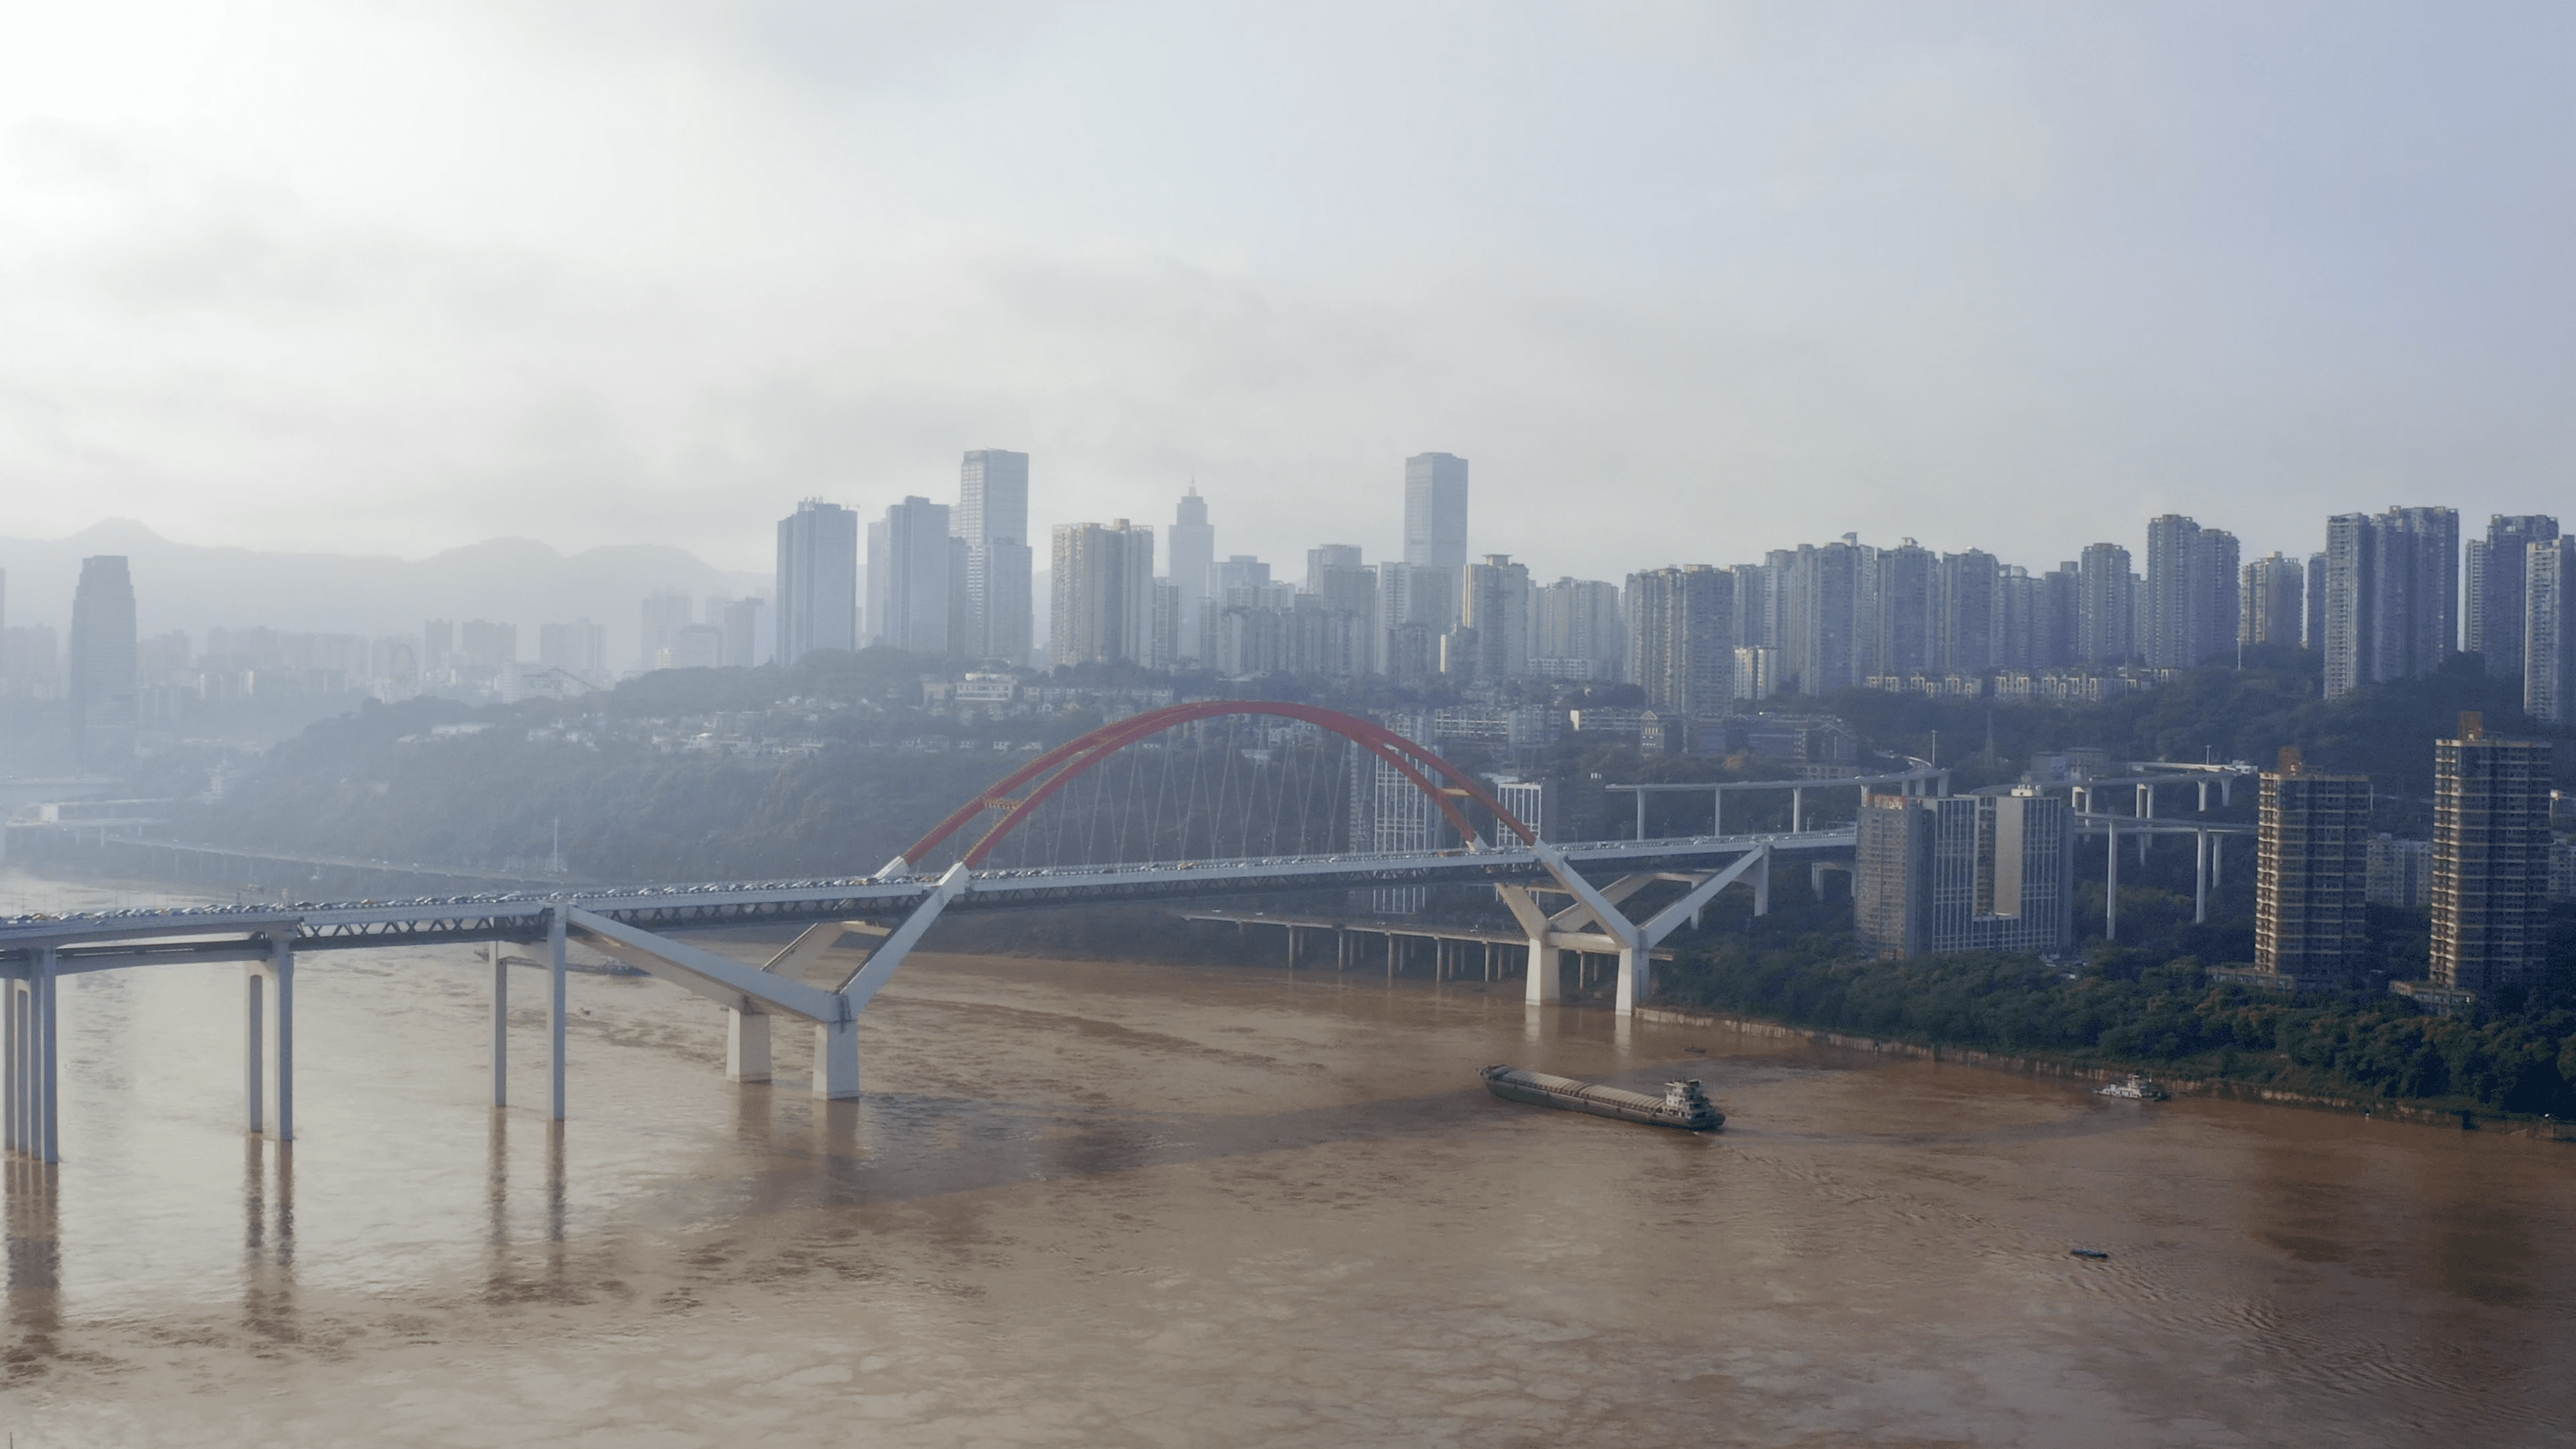 限行时段延长半小时 新增曾家岩大桥限行点 全新重庆中心城区桥隧错峰通行通告征求公众意见 - 封面新闻